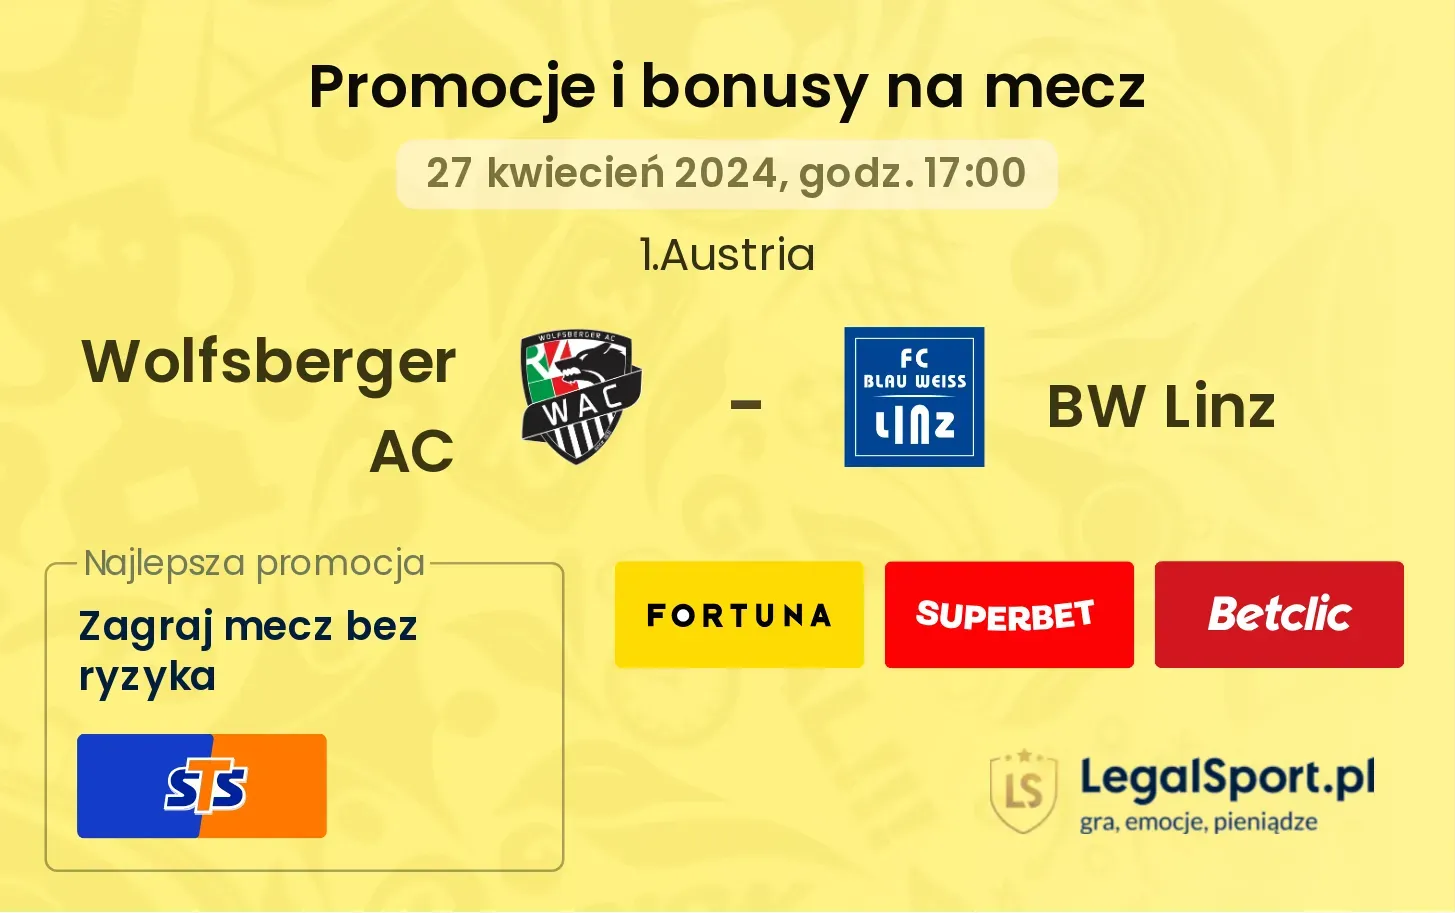 Wolfsberger AC - BW Linz promocje bonusy na mecz